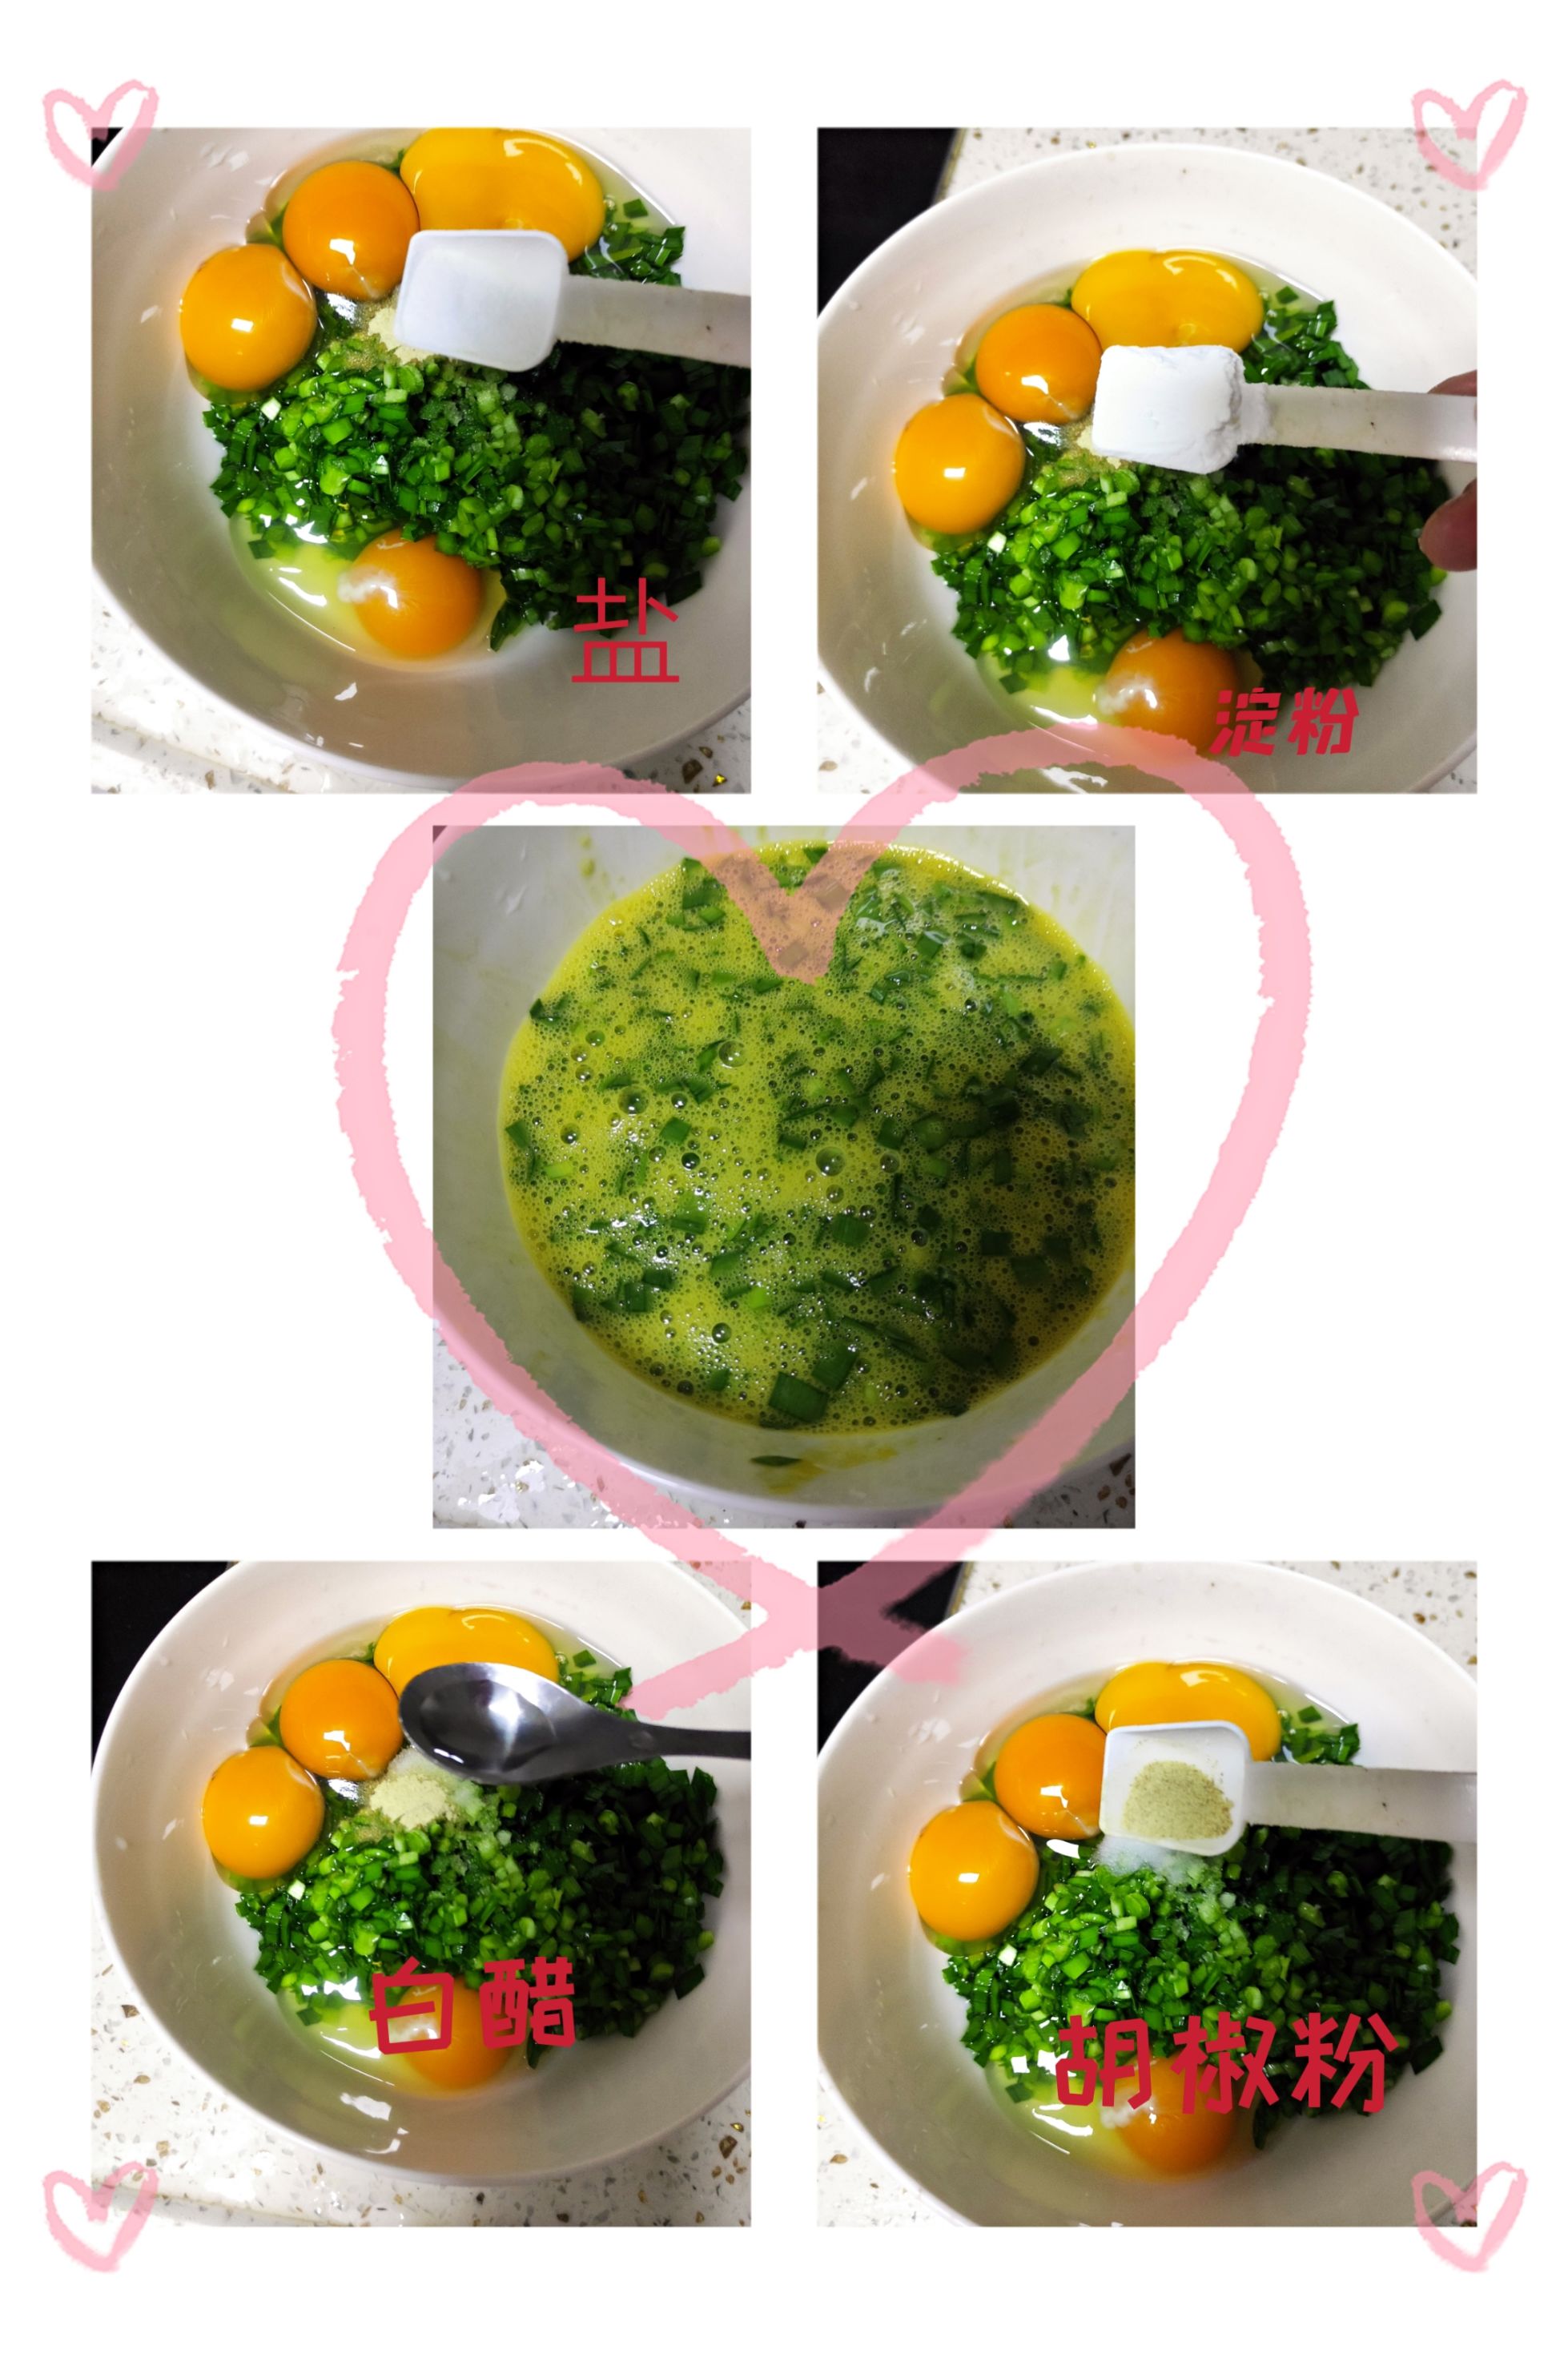 【小饭盒】老话说韭菜就是九个菜 今天分享一个 韭菜煎蛋